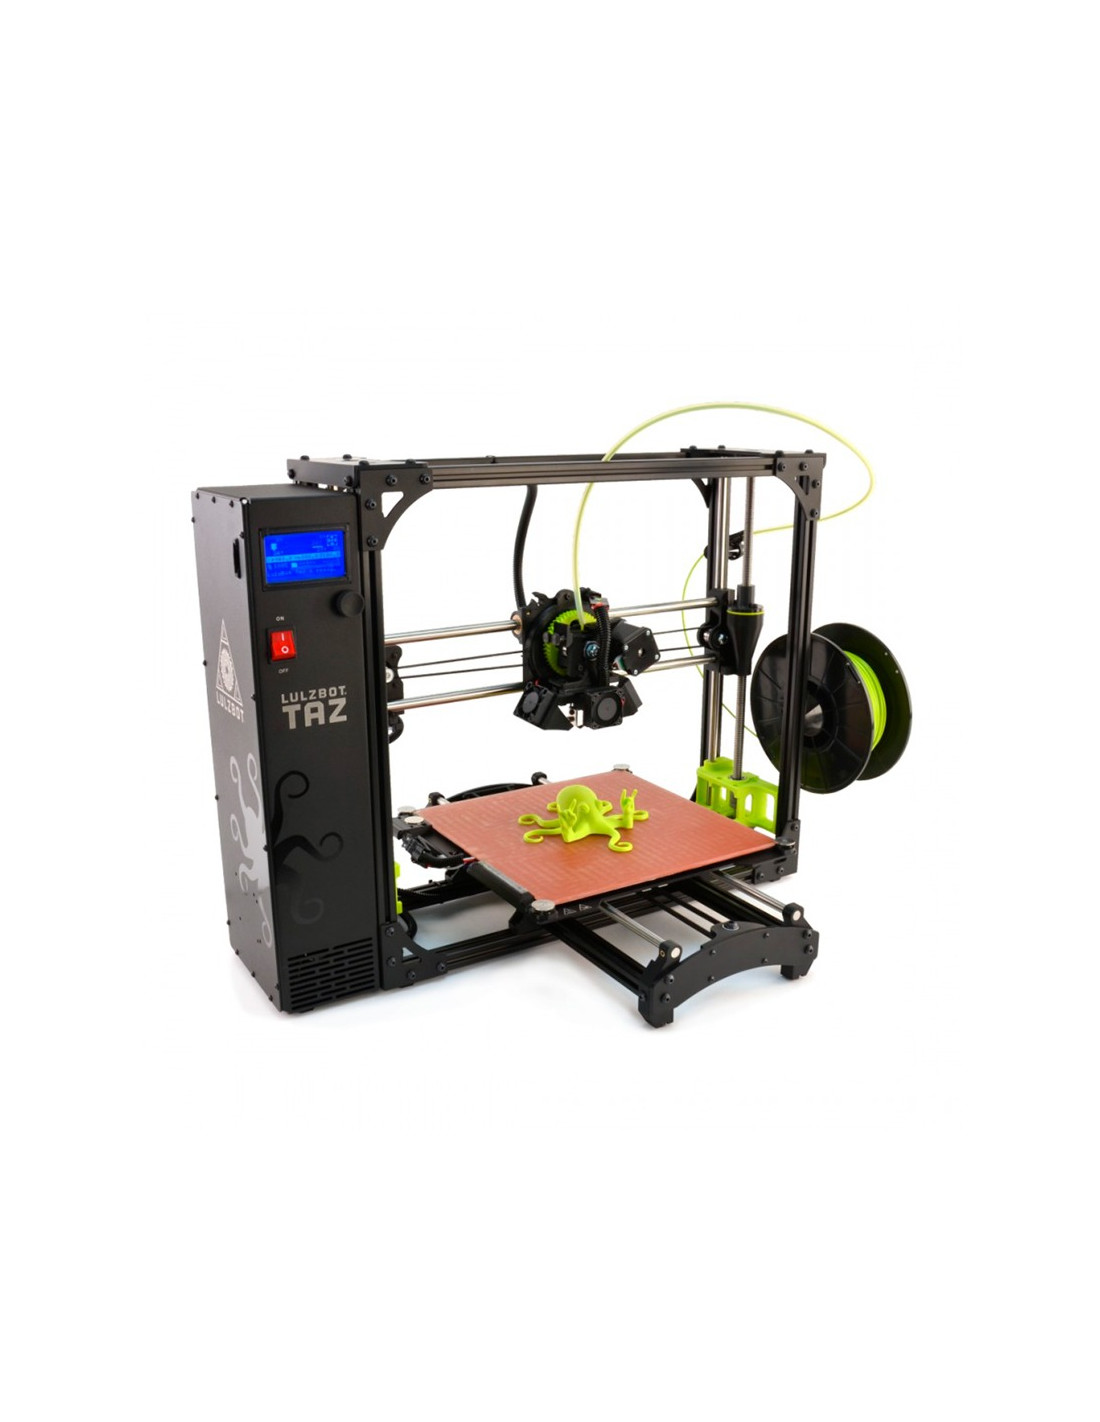 Impressora 3D LulzBot TAZ 6